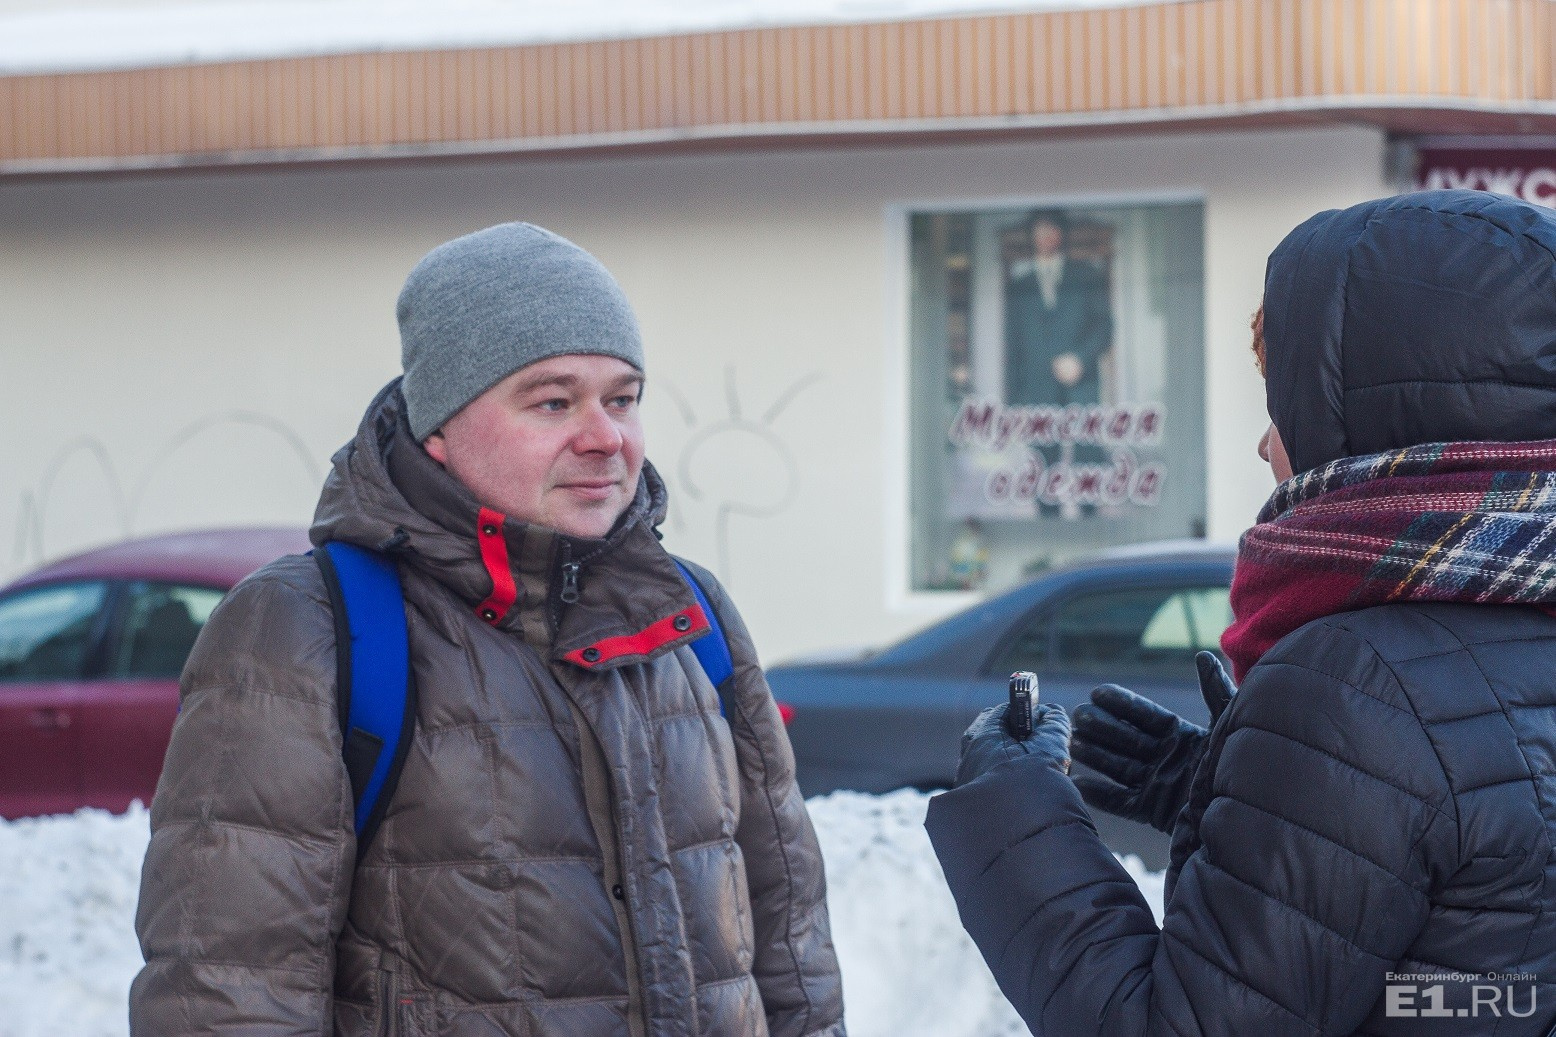 Несмотря на ветреный и морозный день, экскурсию Е1.RU проводит научный сотрудник Музея истории Екатеринбурга Евгений Бурденков.
